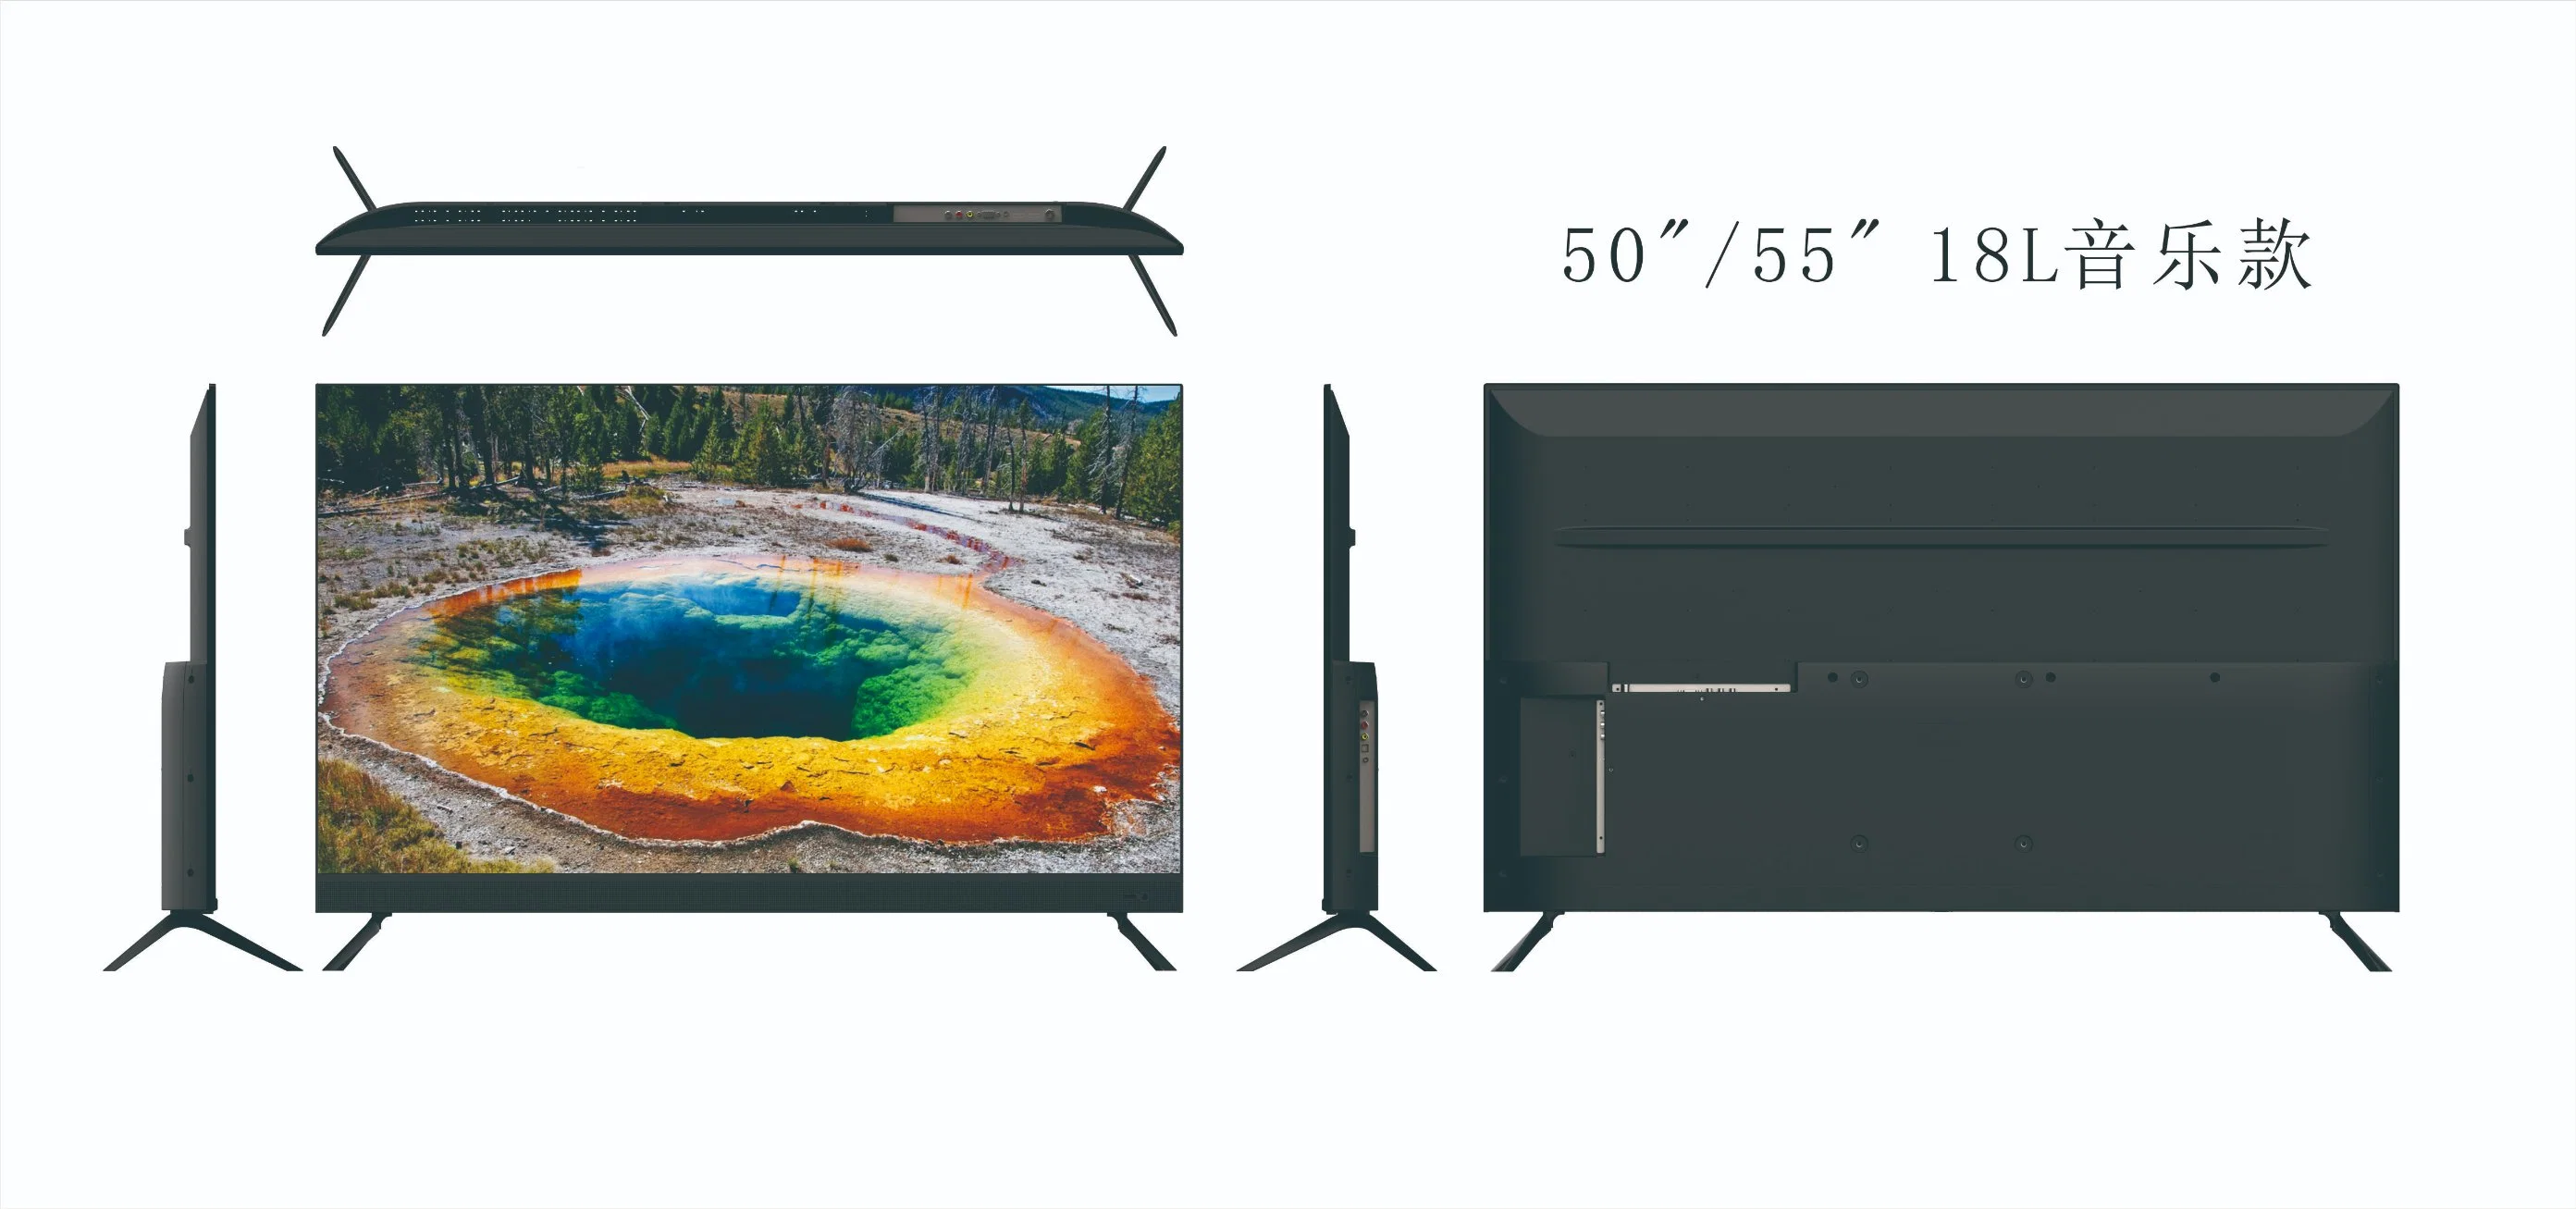 أفضل سعر في المصنع مع تلفزيون بشاشة LCD LED بحجم 55 بوصة مع نظام DVB-T2 S2 الرقمي